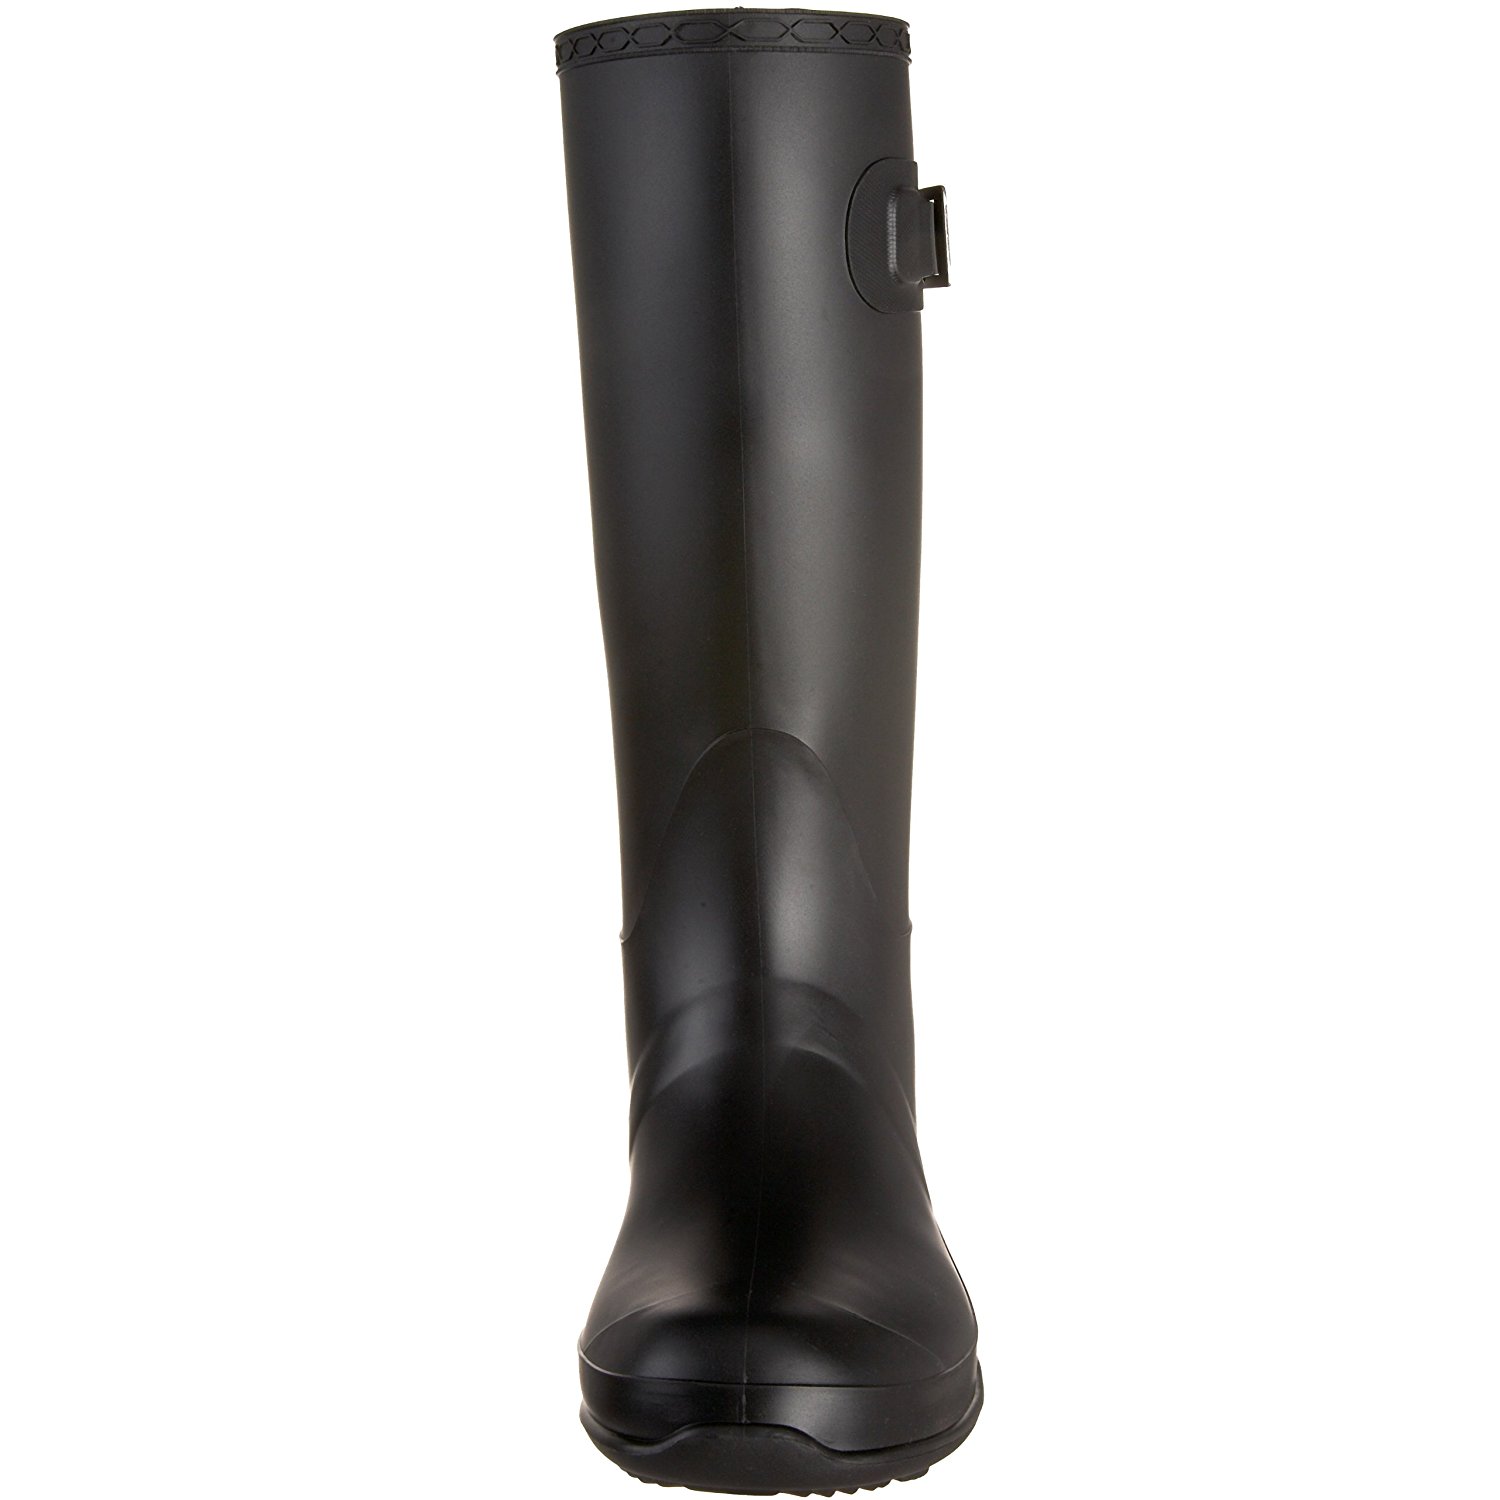 Kamik Women's Olivia Rain Boot, Black, Size 9.0 g1V4 56248163823 | eBay